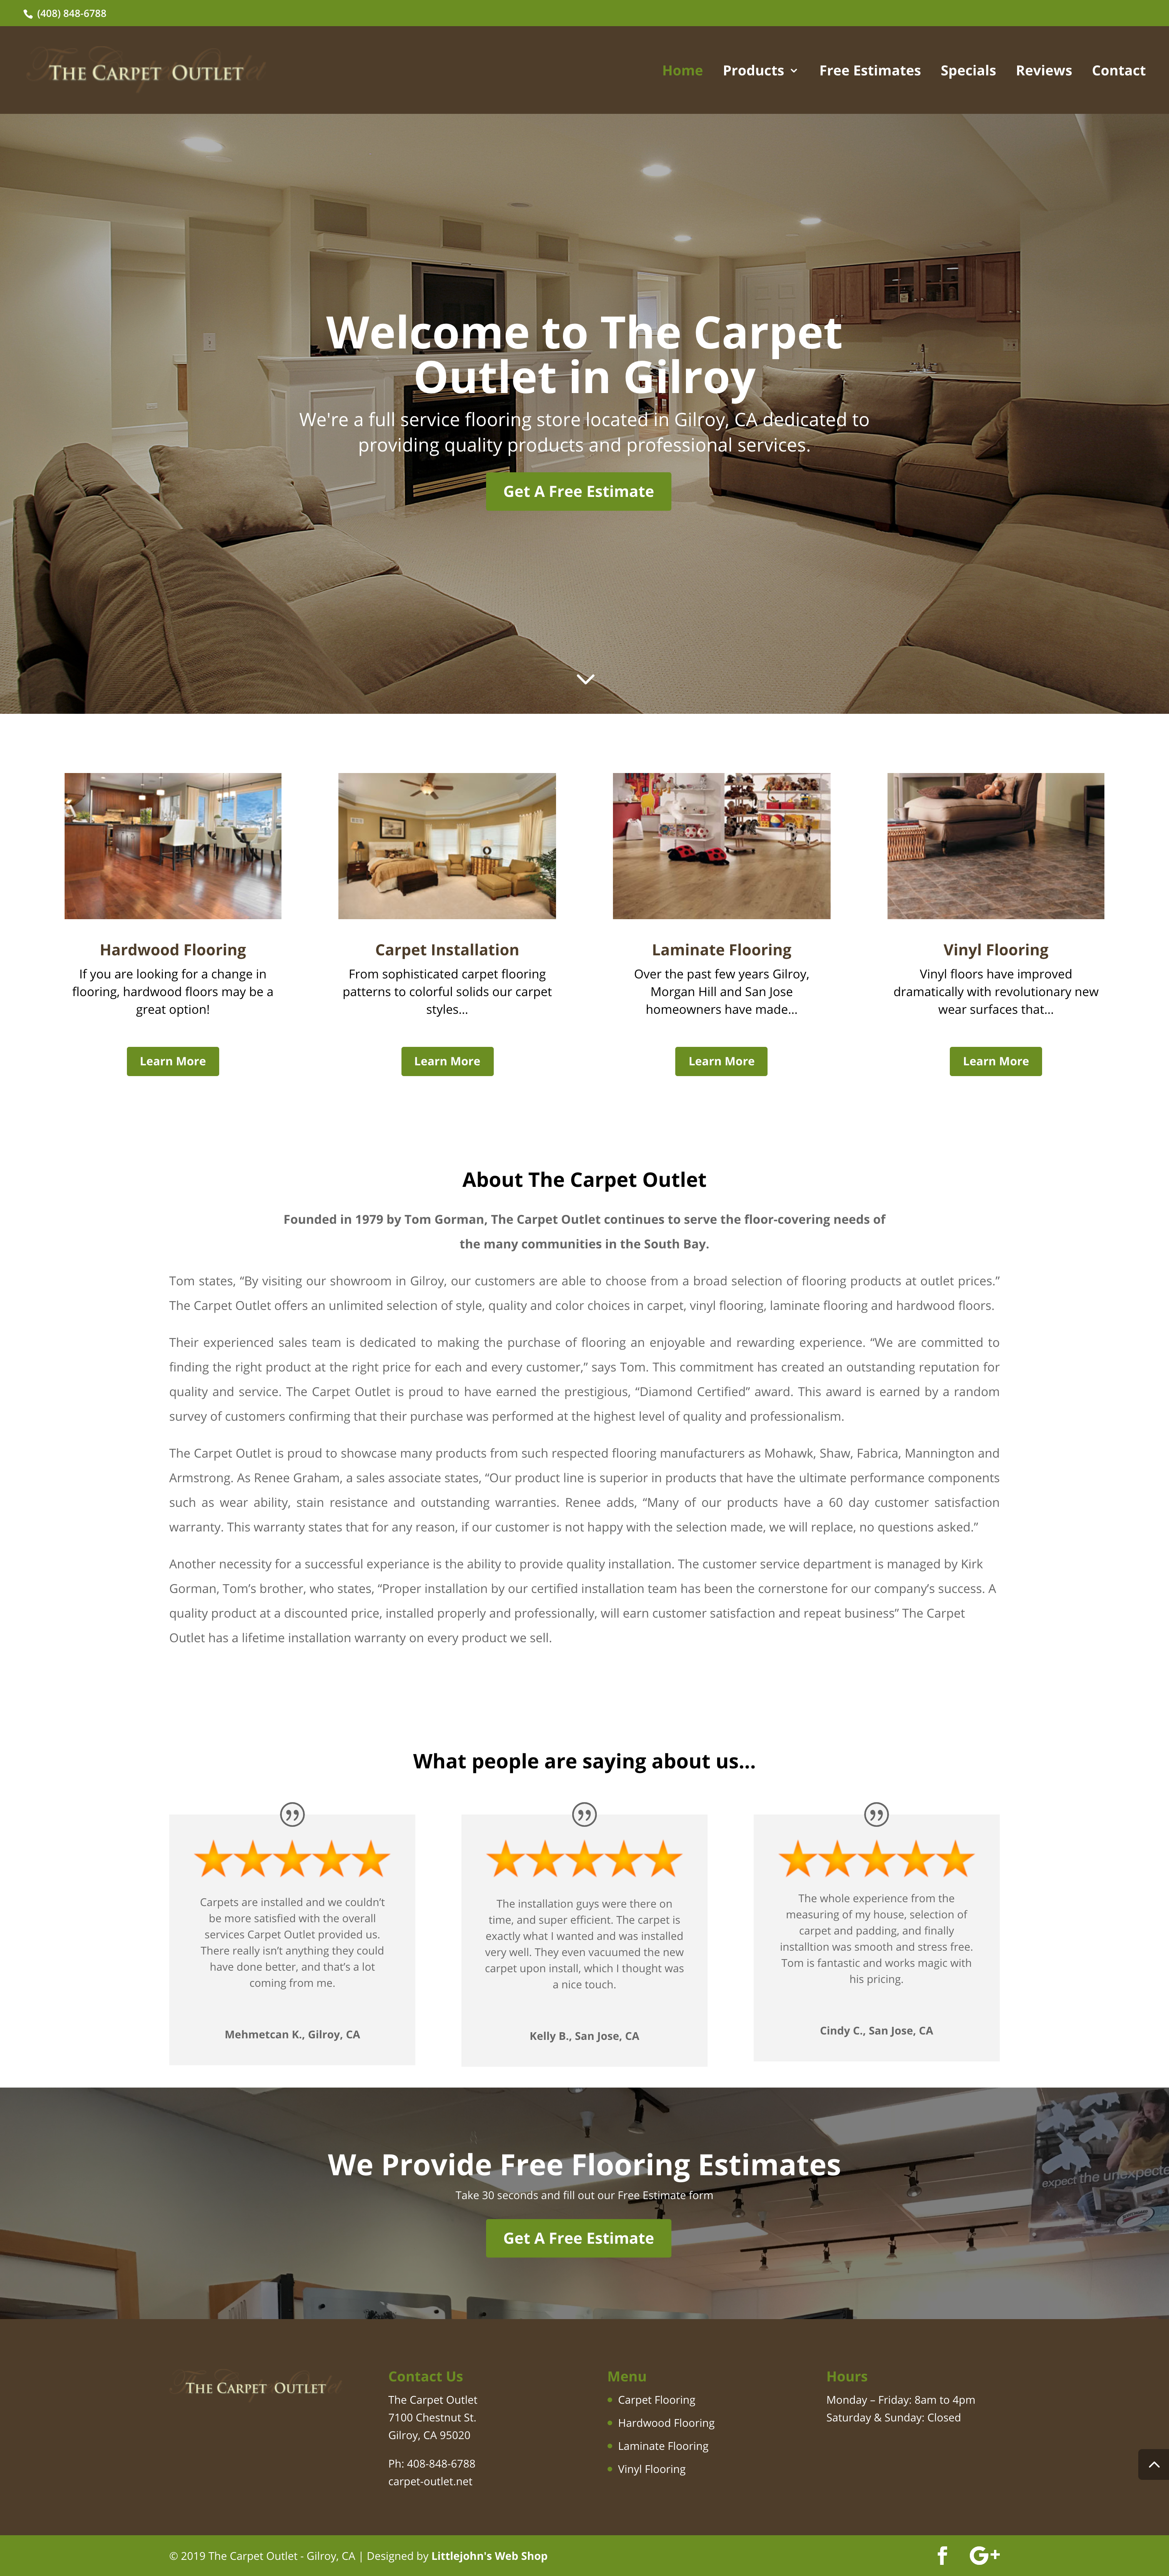 The Carpet Outlet Website Design